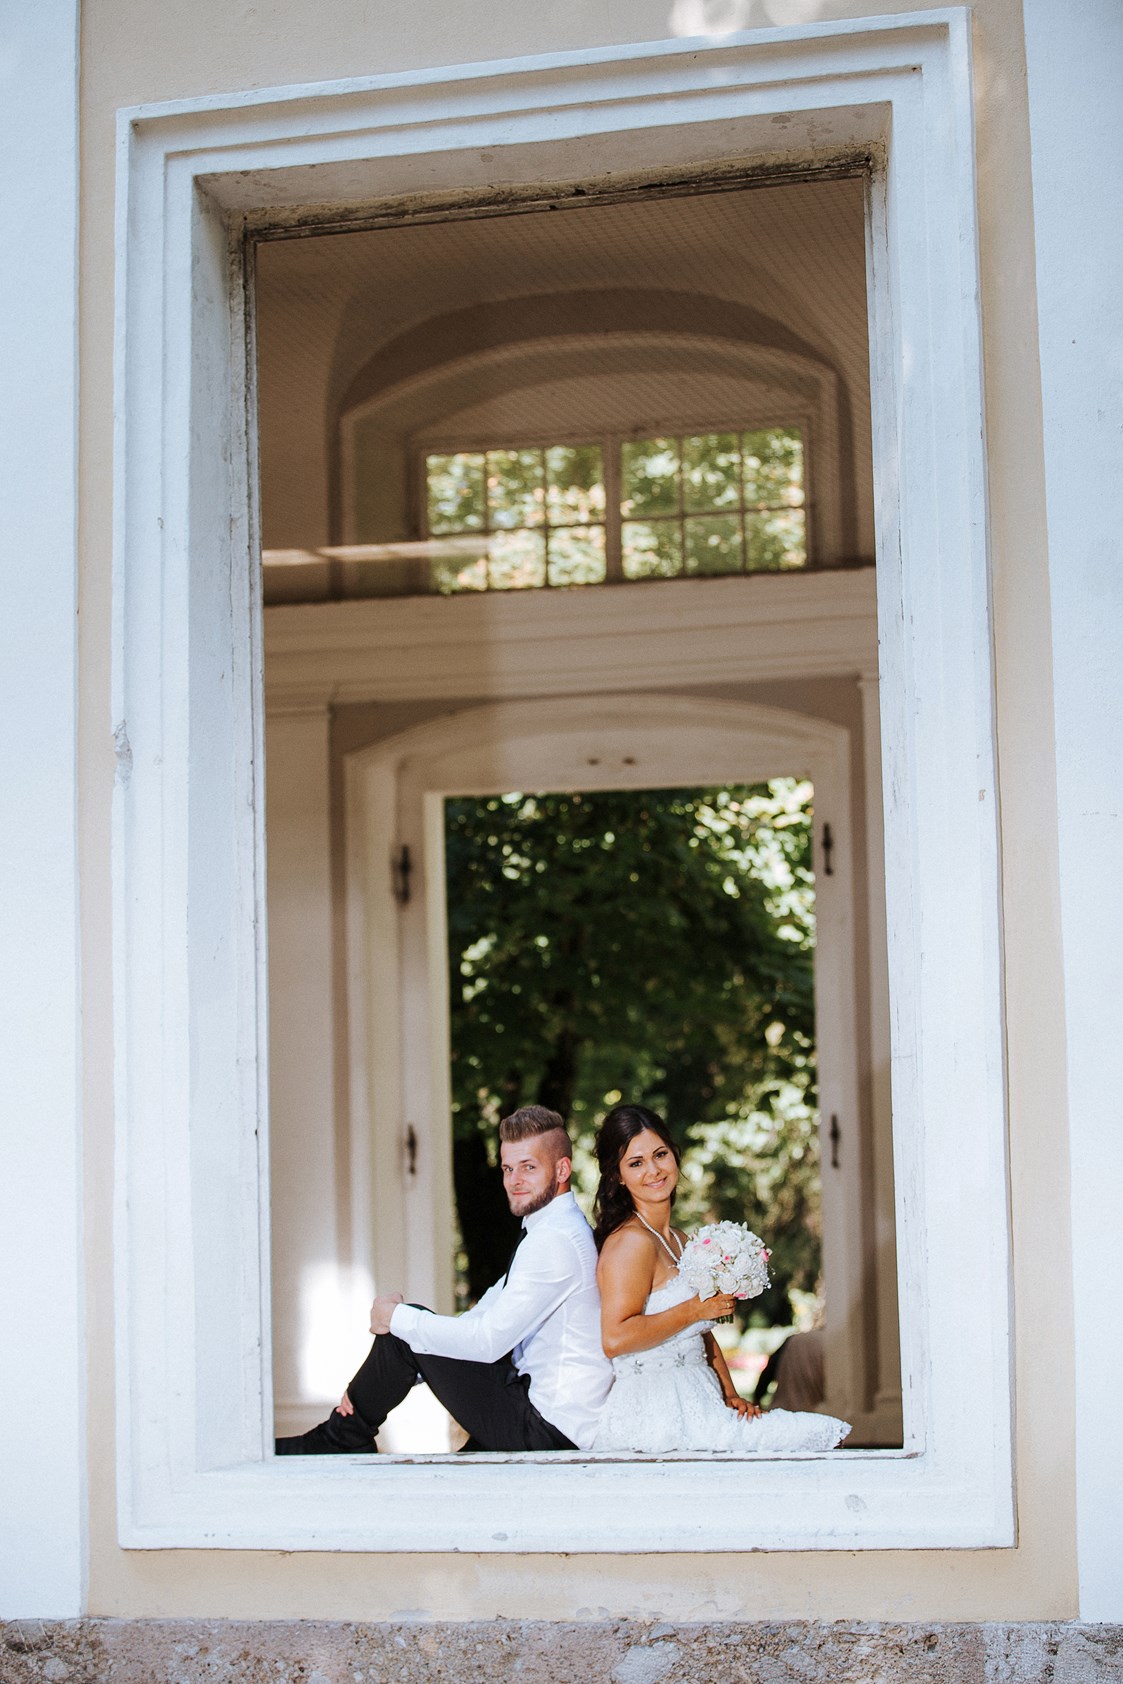 Hochzeitsfotograf: Kerstin und Markus in natürlichem Rahmen in Szene gesetzt ... Es war eine tolle Hochzeit in Innsbruck - click & smile photography